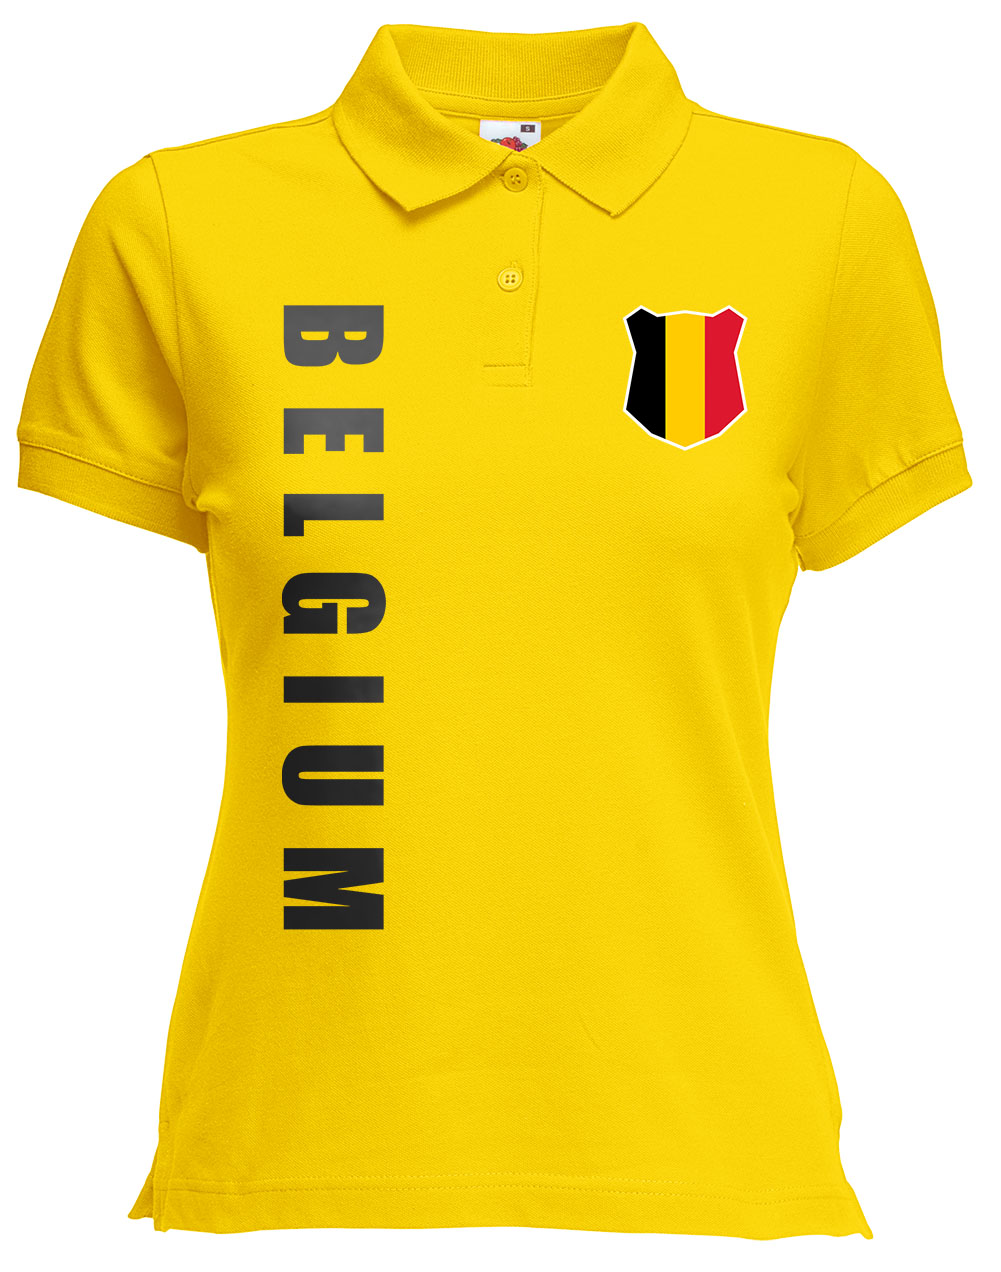 Belgien Belgium Damen Trikot Fanshirt Top Shirt WM 2018 Name Nummer 